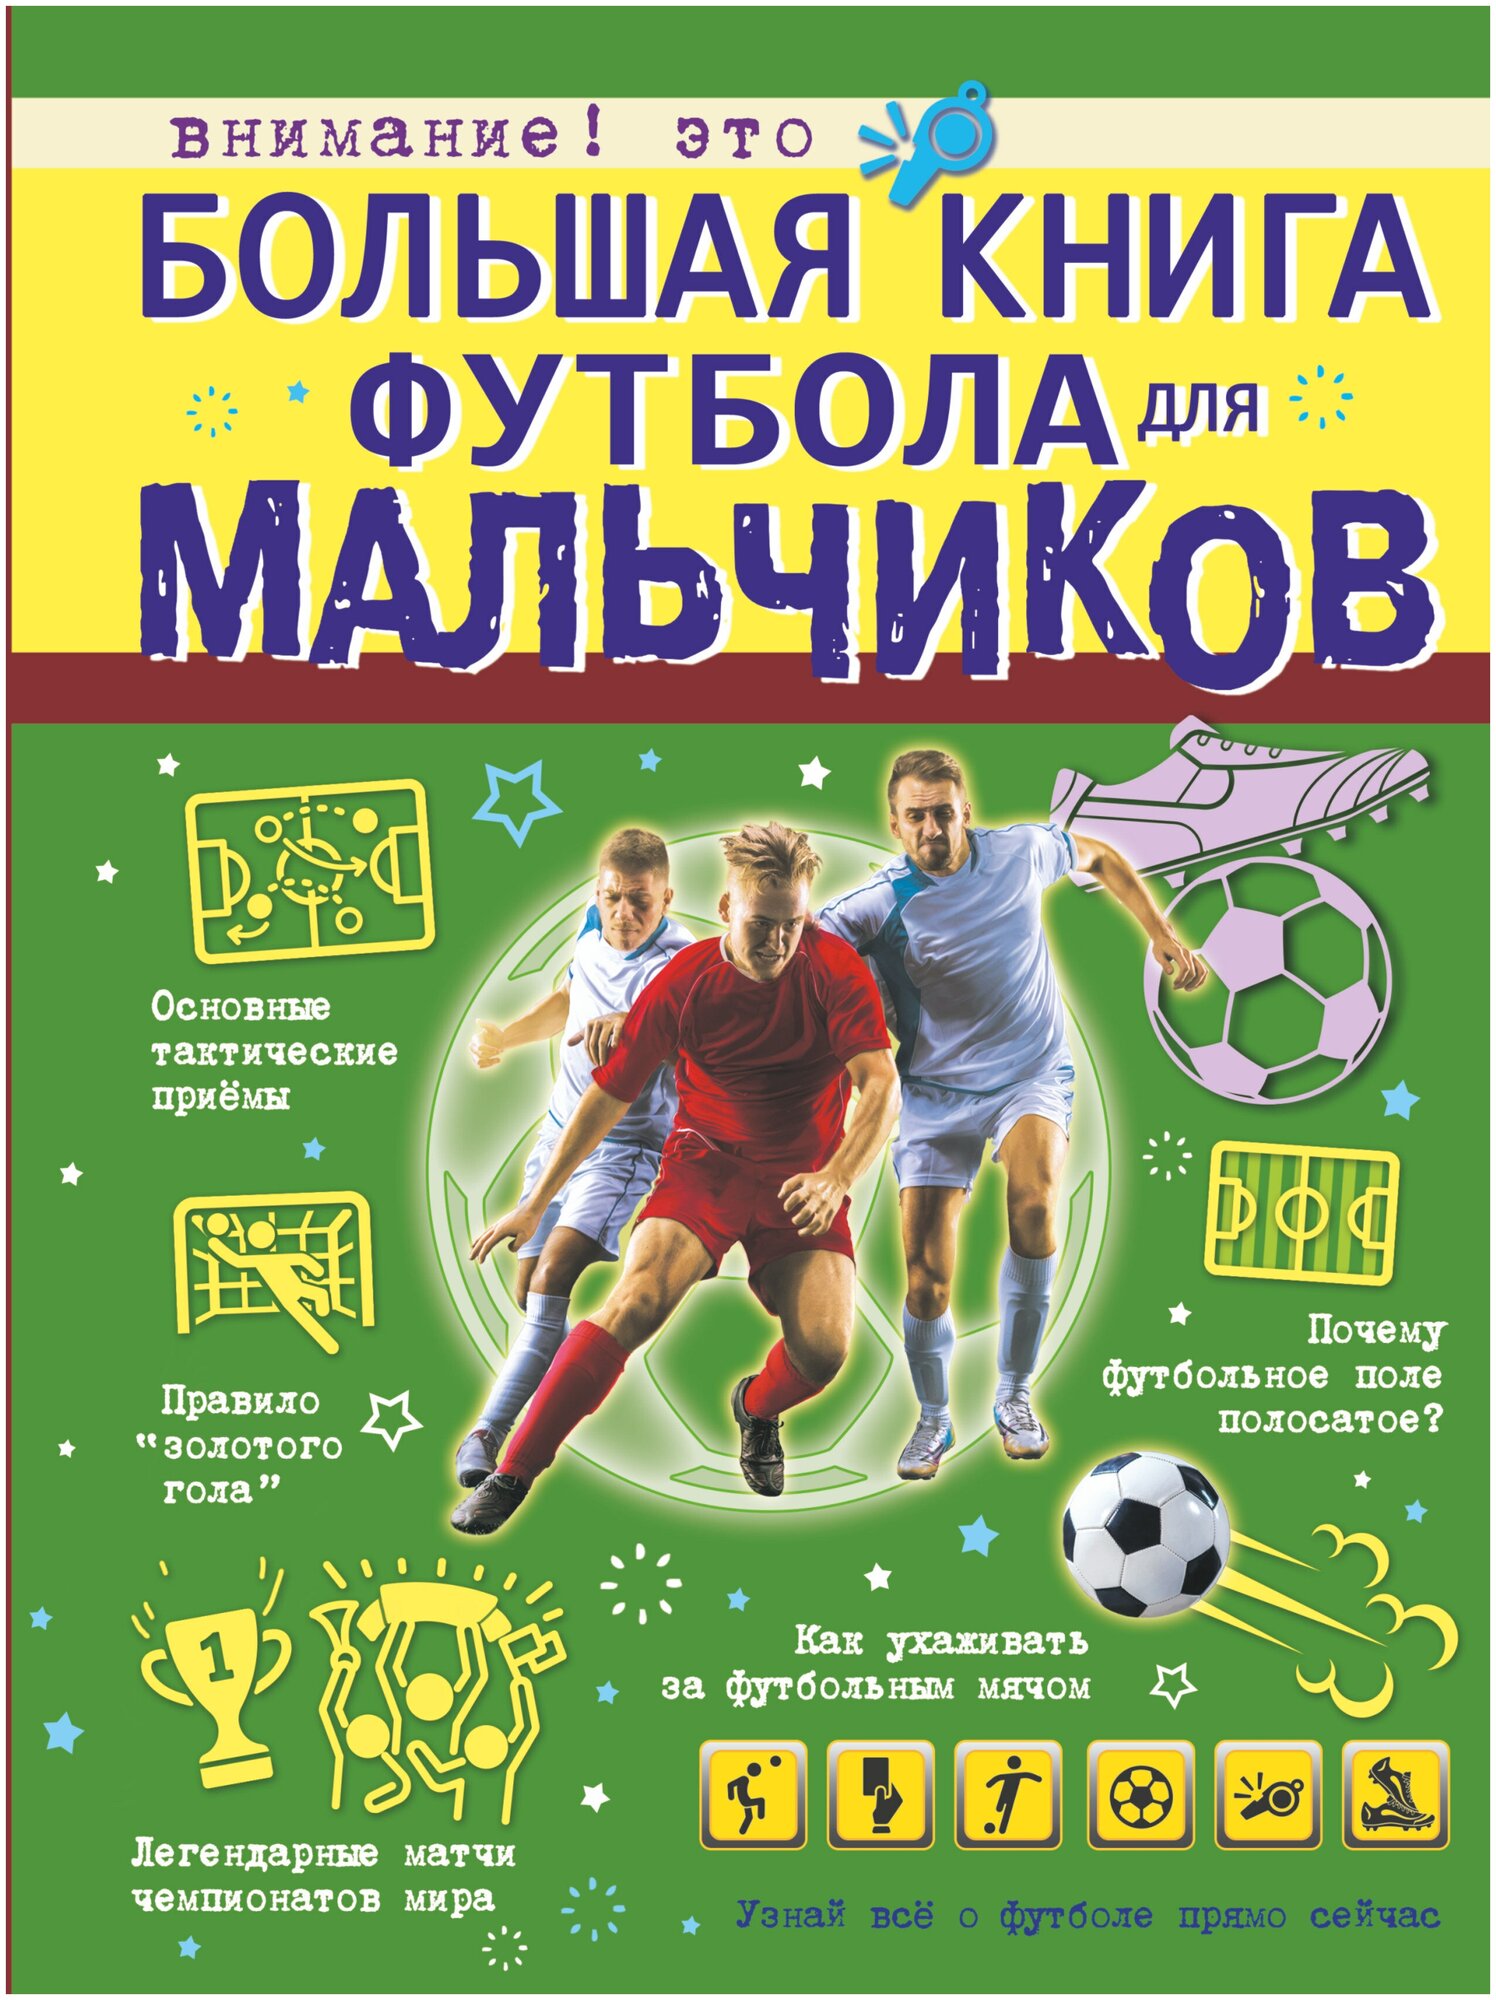 Большая книга футбола для мальчиков - фото №1